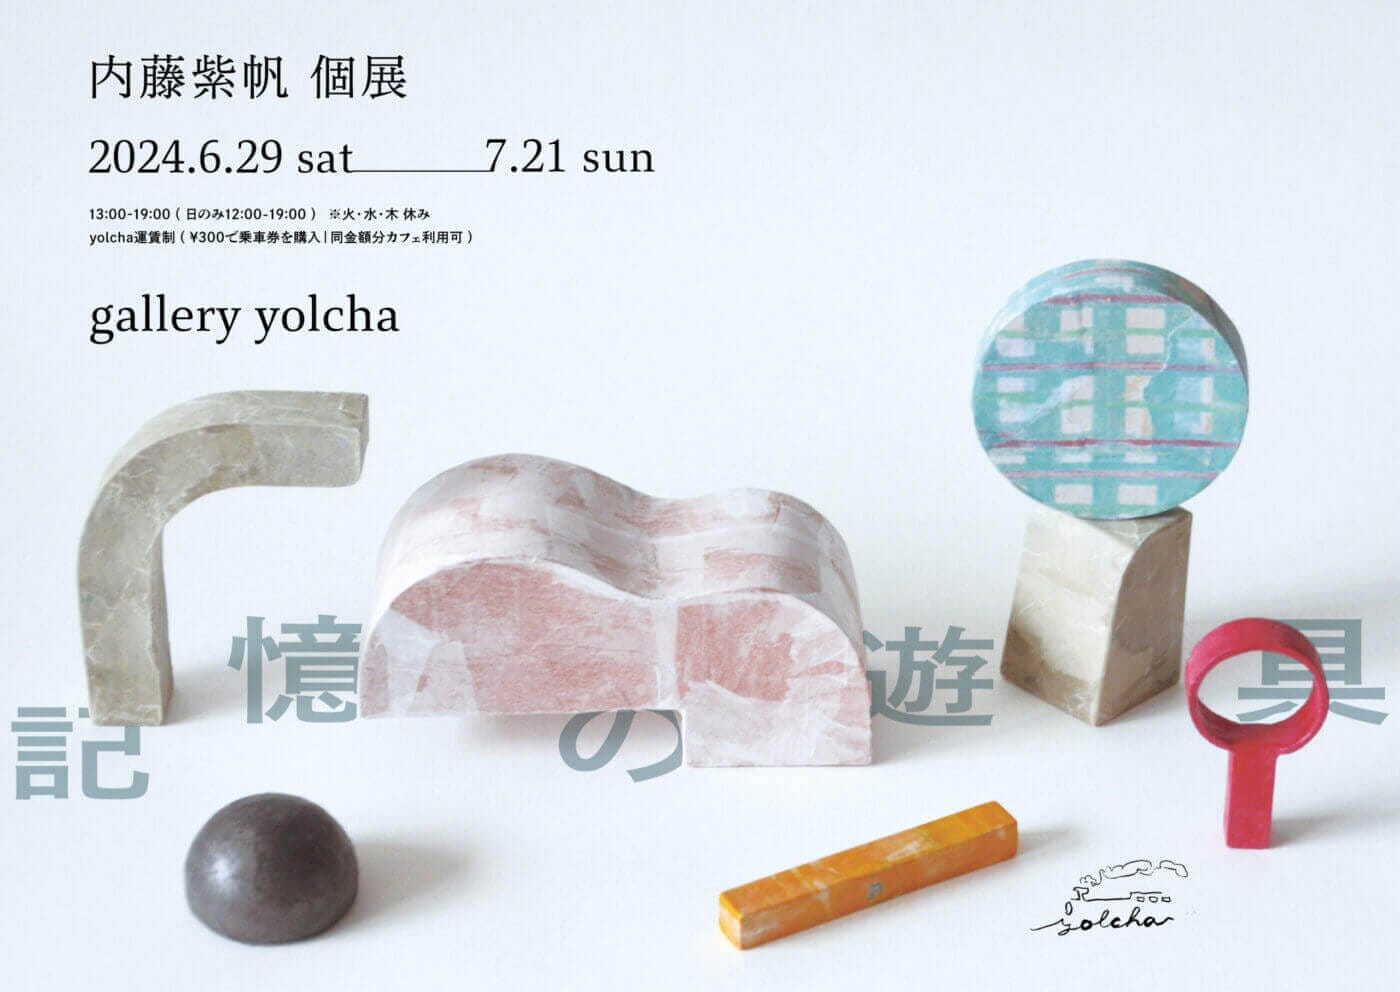 内藤紫帆の個展「記憶の遊具」、gallery yolchaにて6月29日から開催。写真のイメージから造形物のスケッチを起こし、それに合うような色や質感の紙を選んで立体を制作。